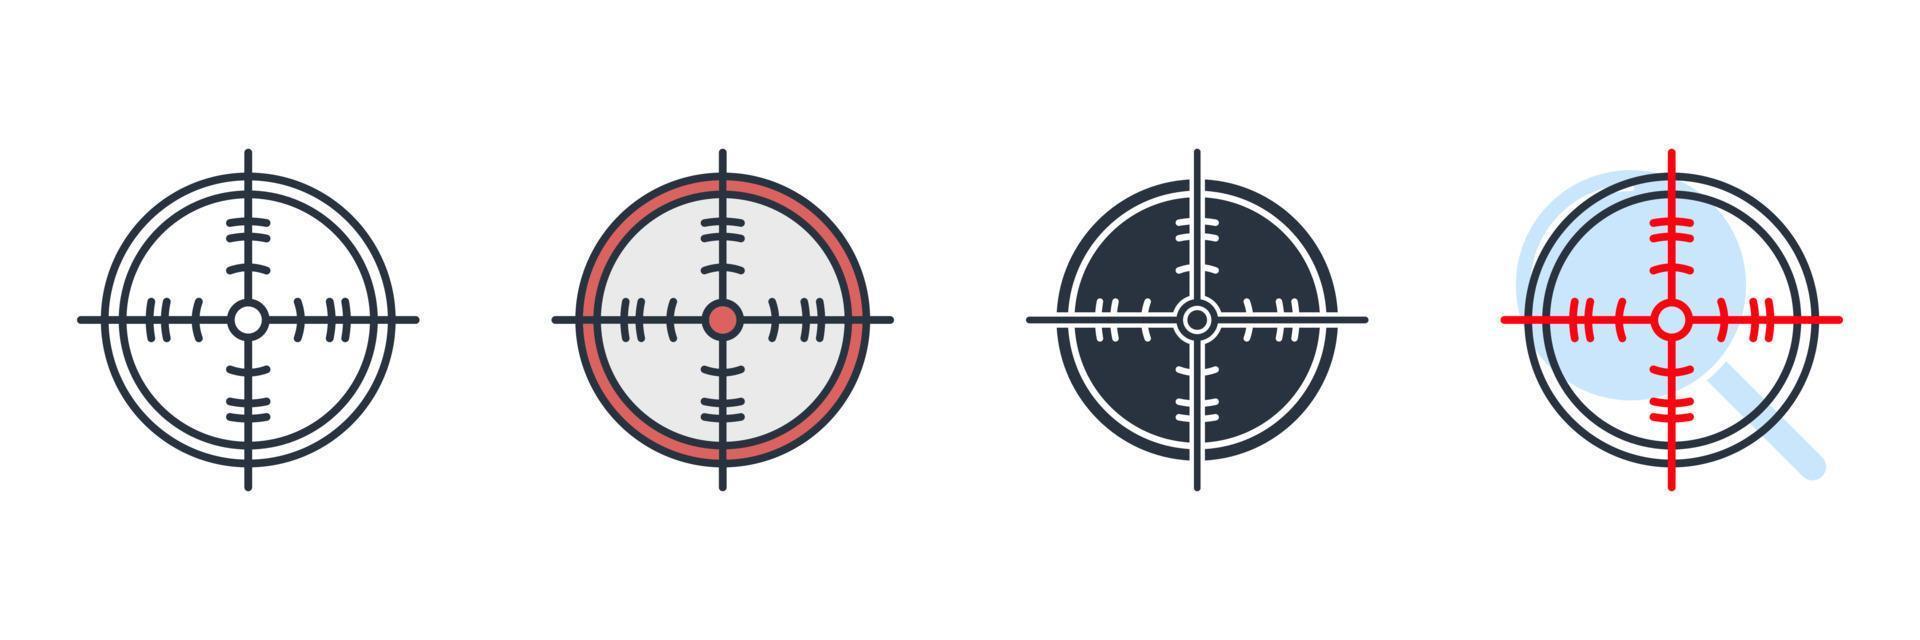 illustrazione vettoriale del logo dell'icona di destinazione. modello di simbolo di obiettivo per la raccolta di grafica e web design